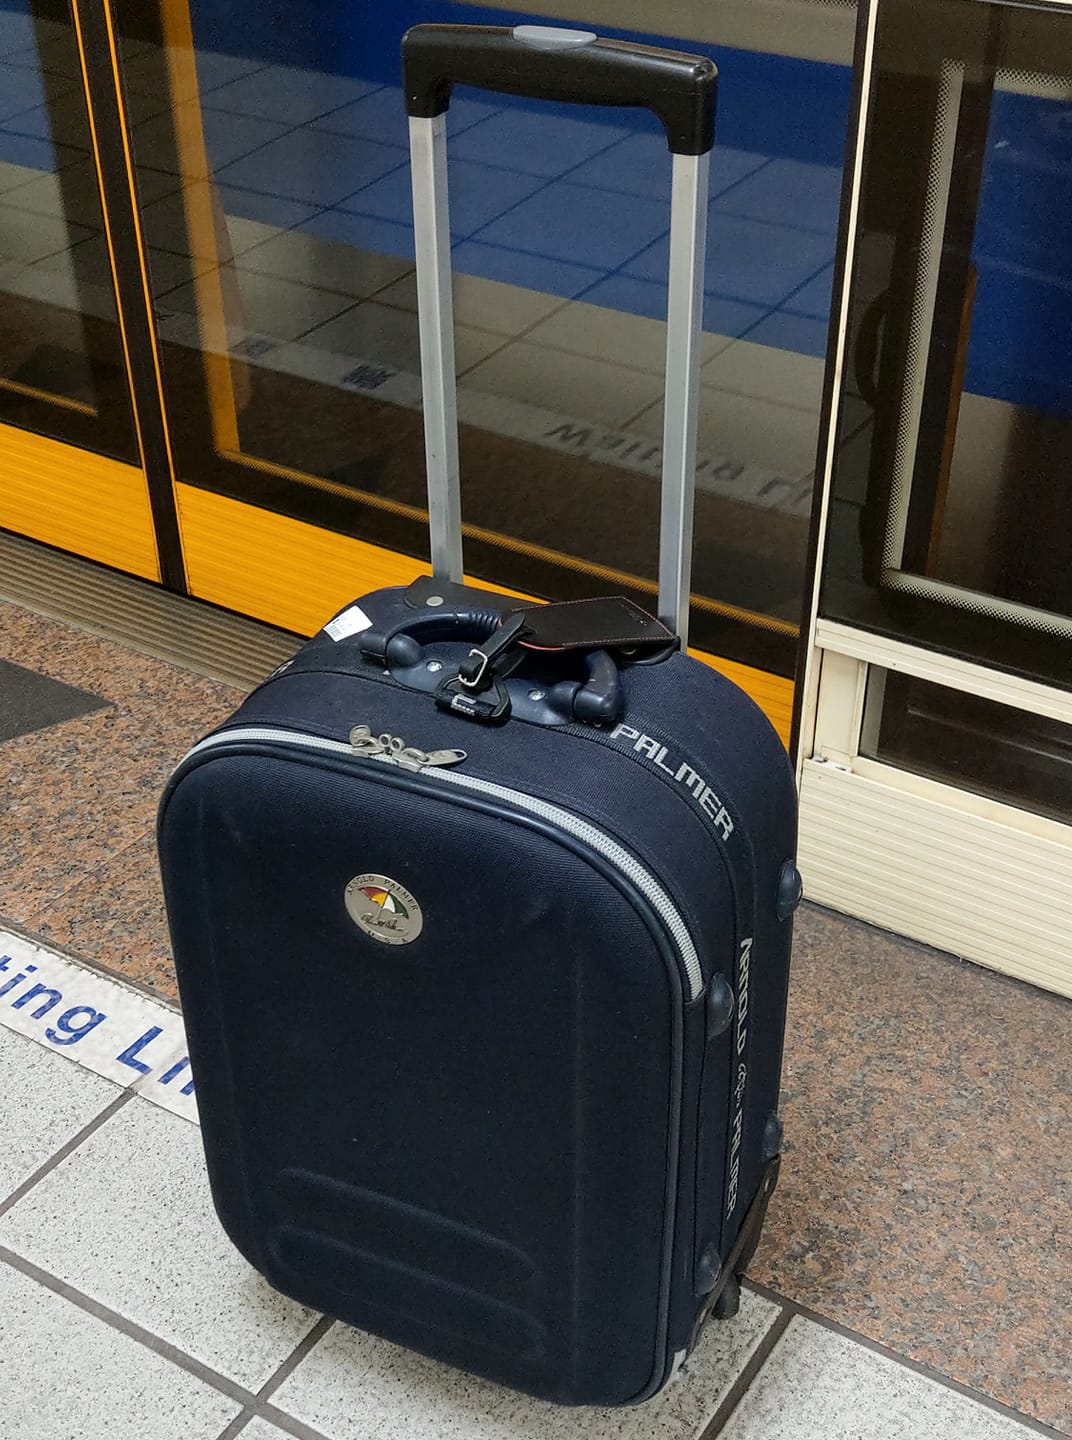 藍色行李箱在高鐵月台上